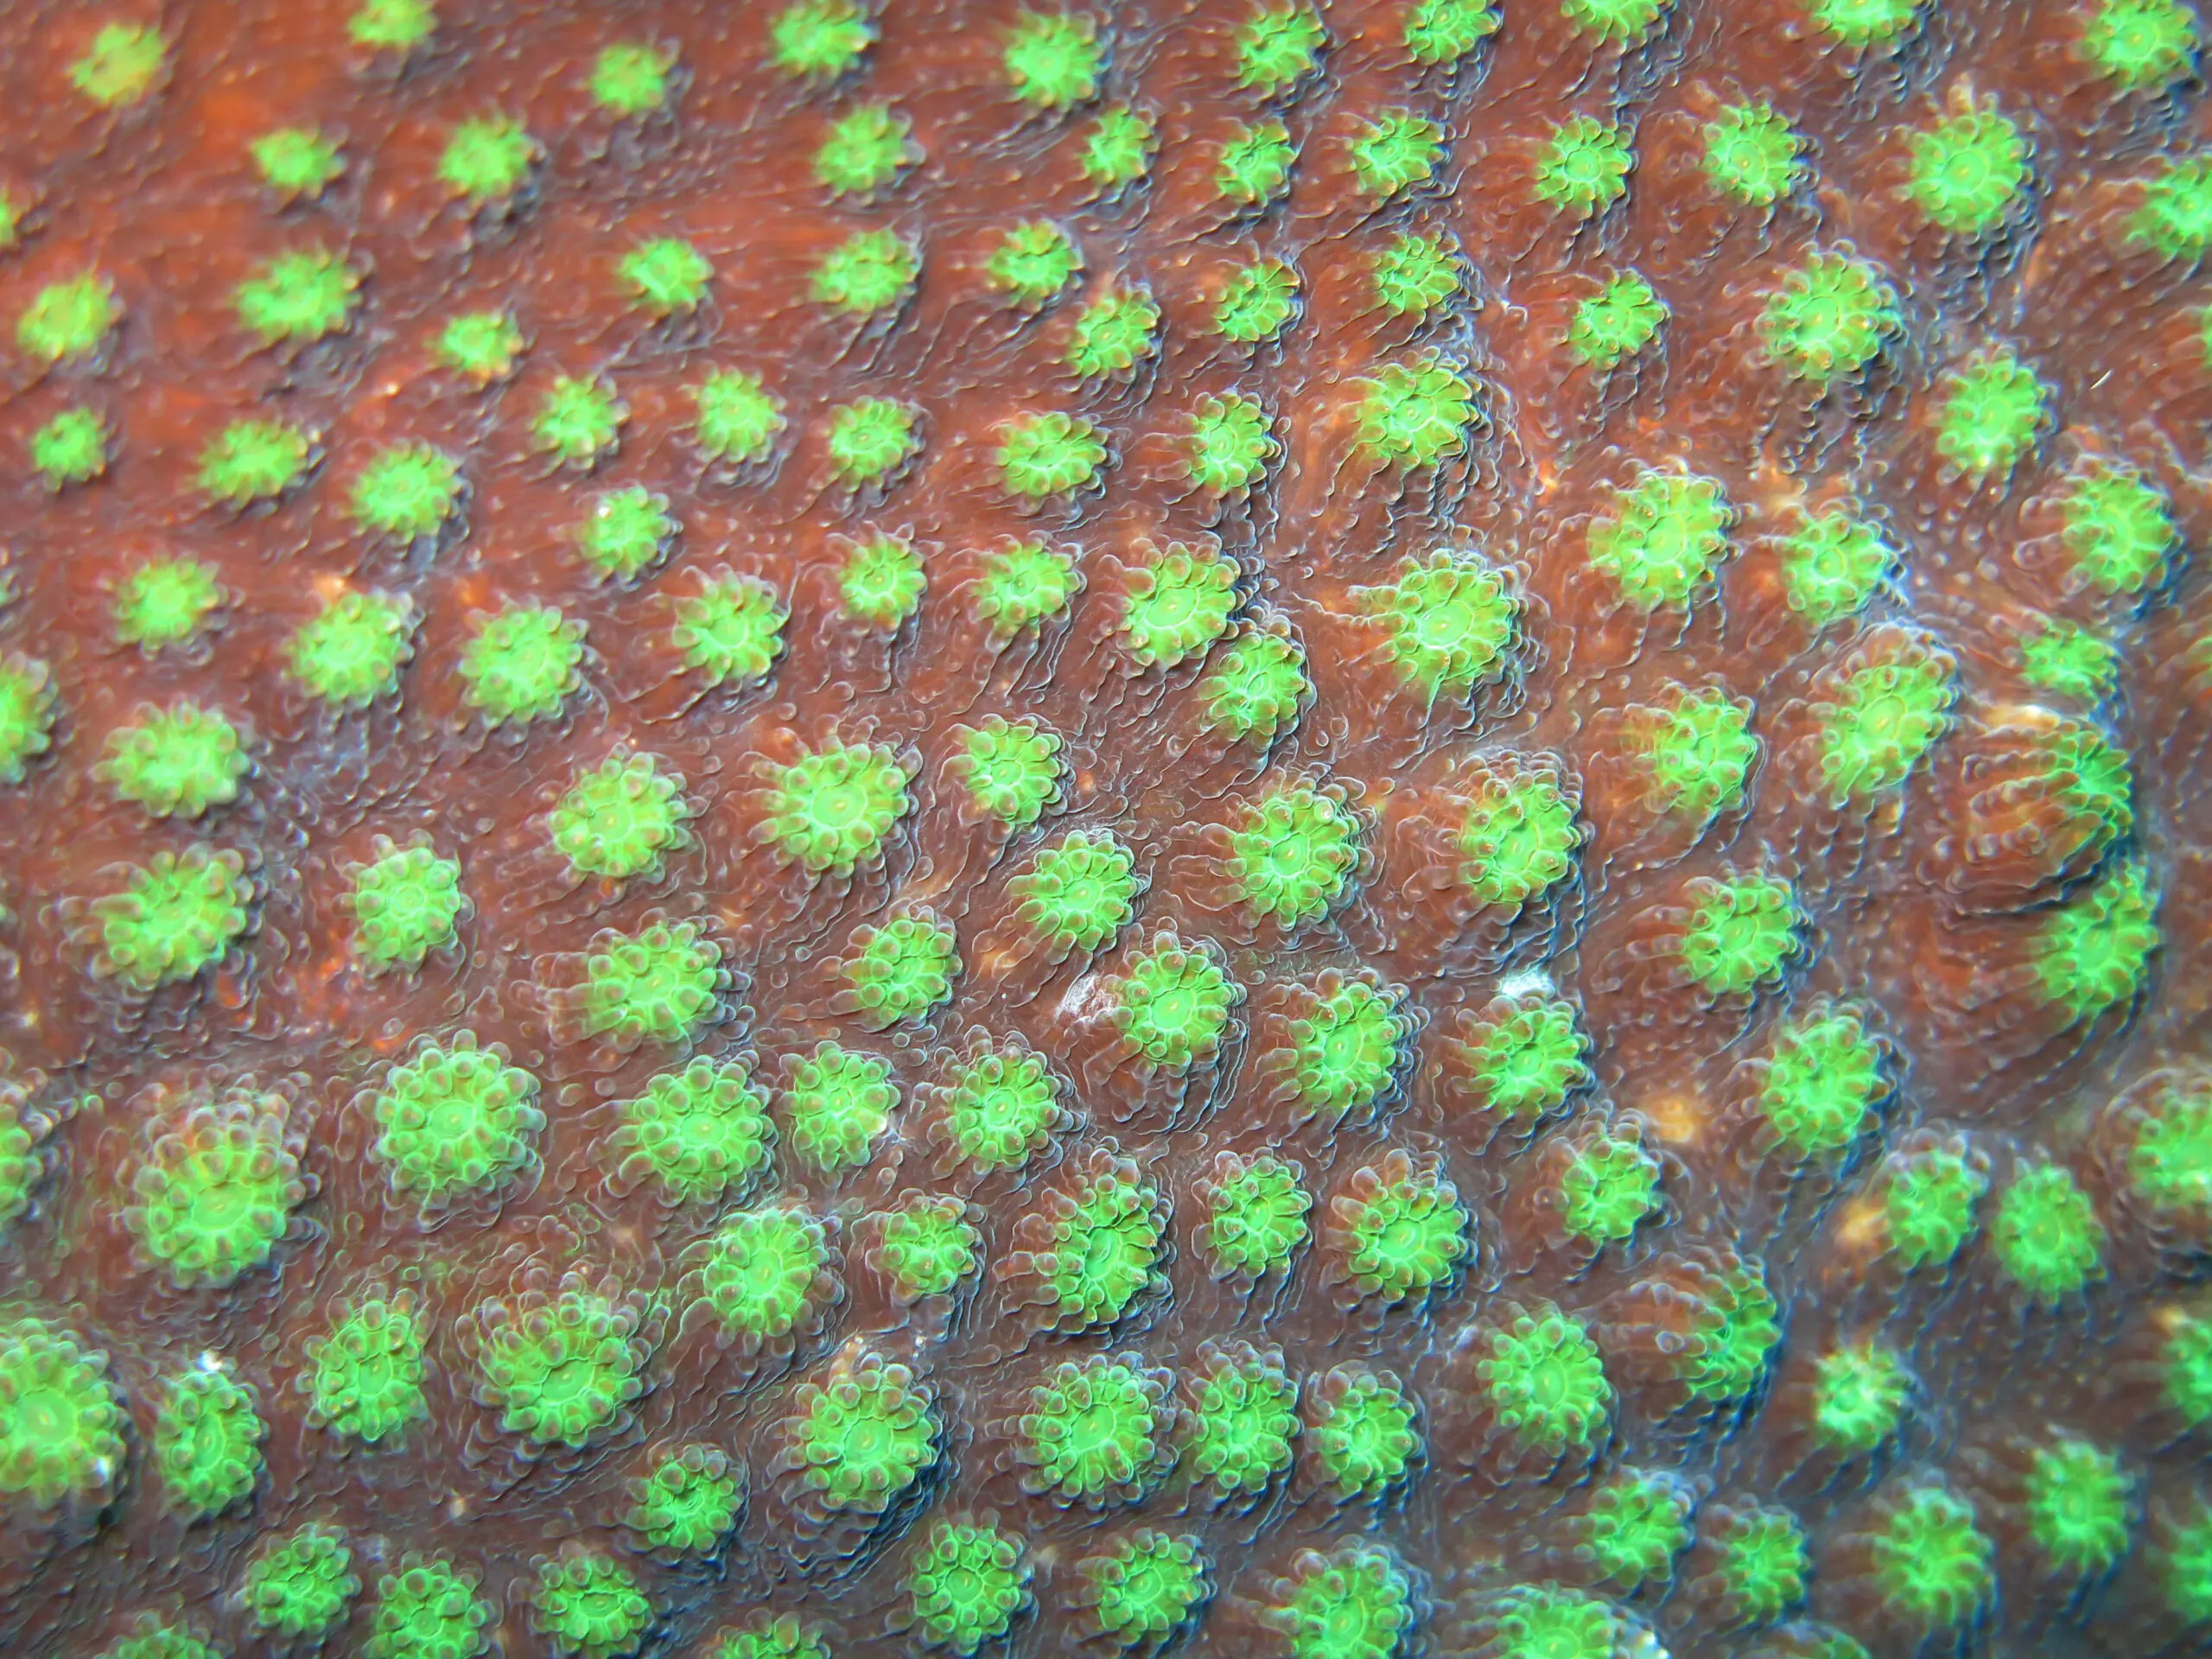 Wandbild (5447) Coral by picture alliance / Arco Images präsentiert: Details und Strukturen,Natur,Sonstige Naturdetails